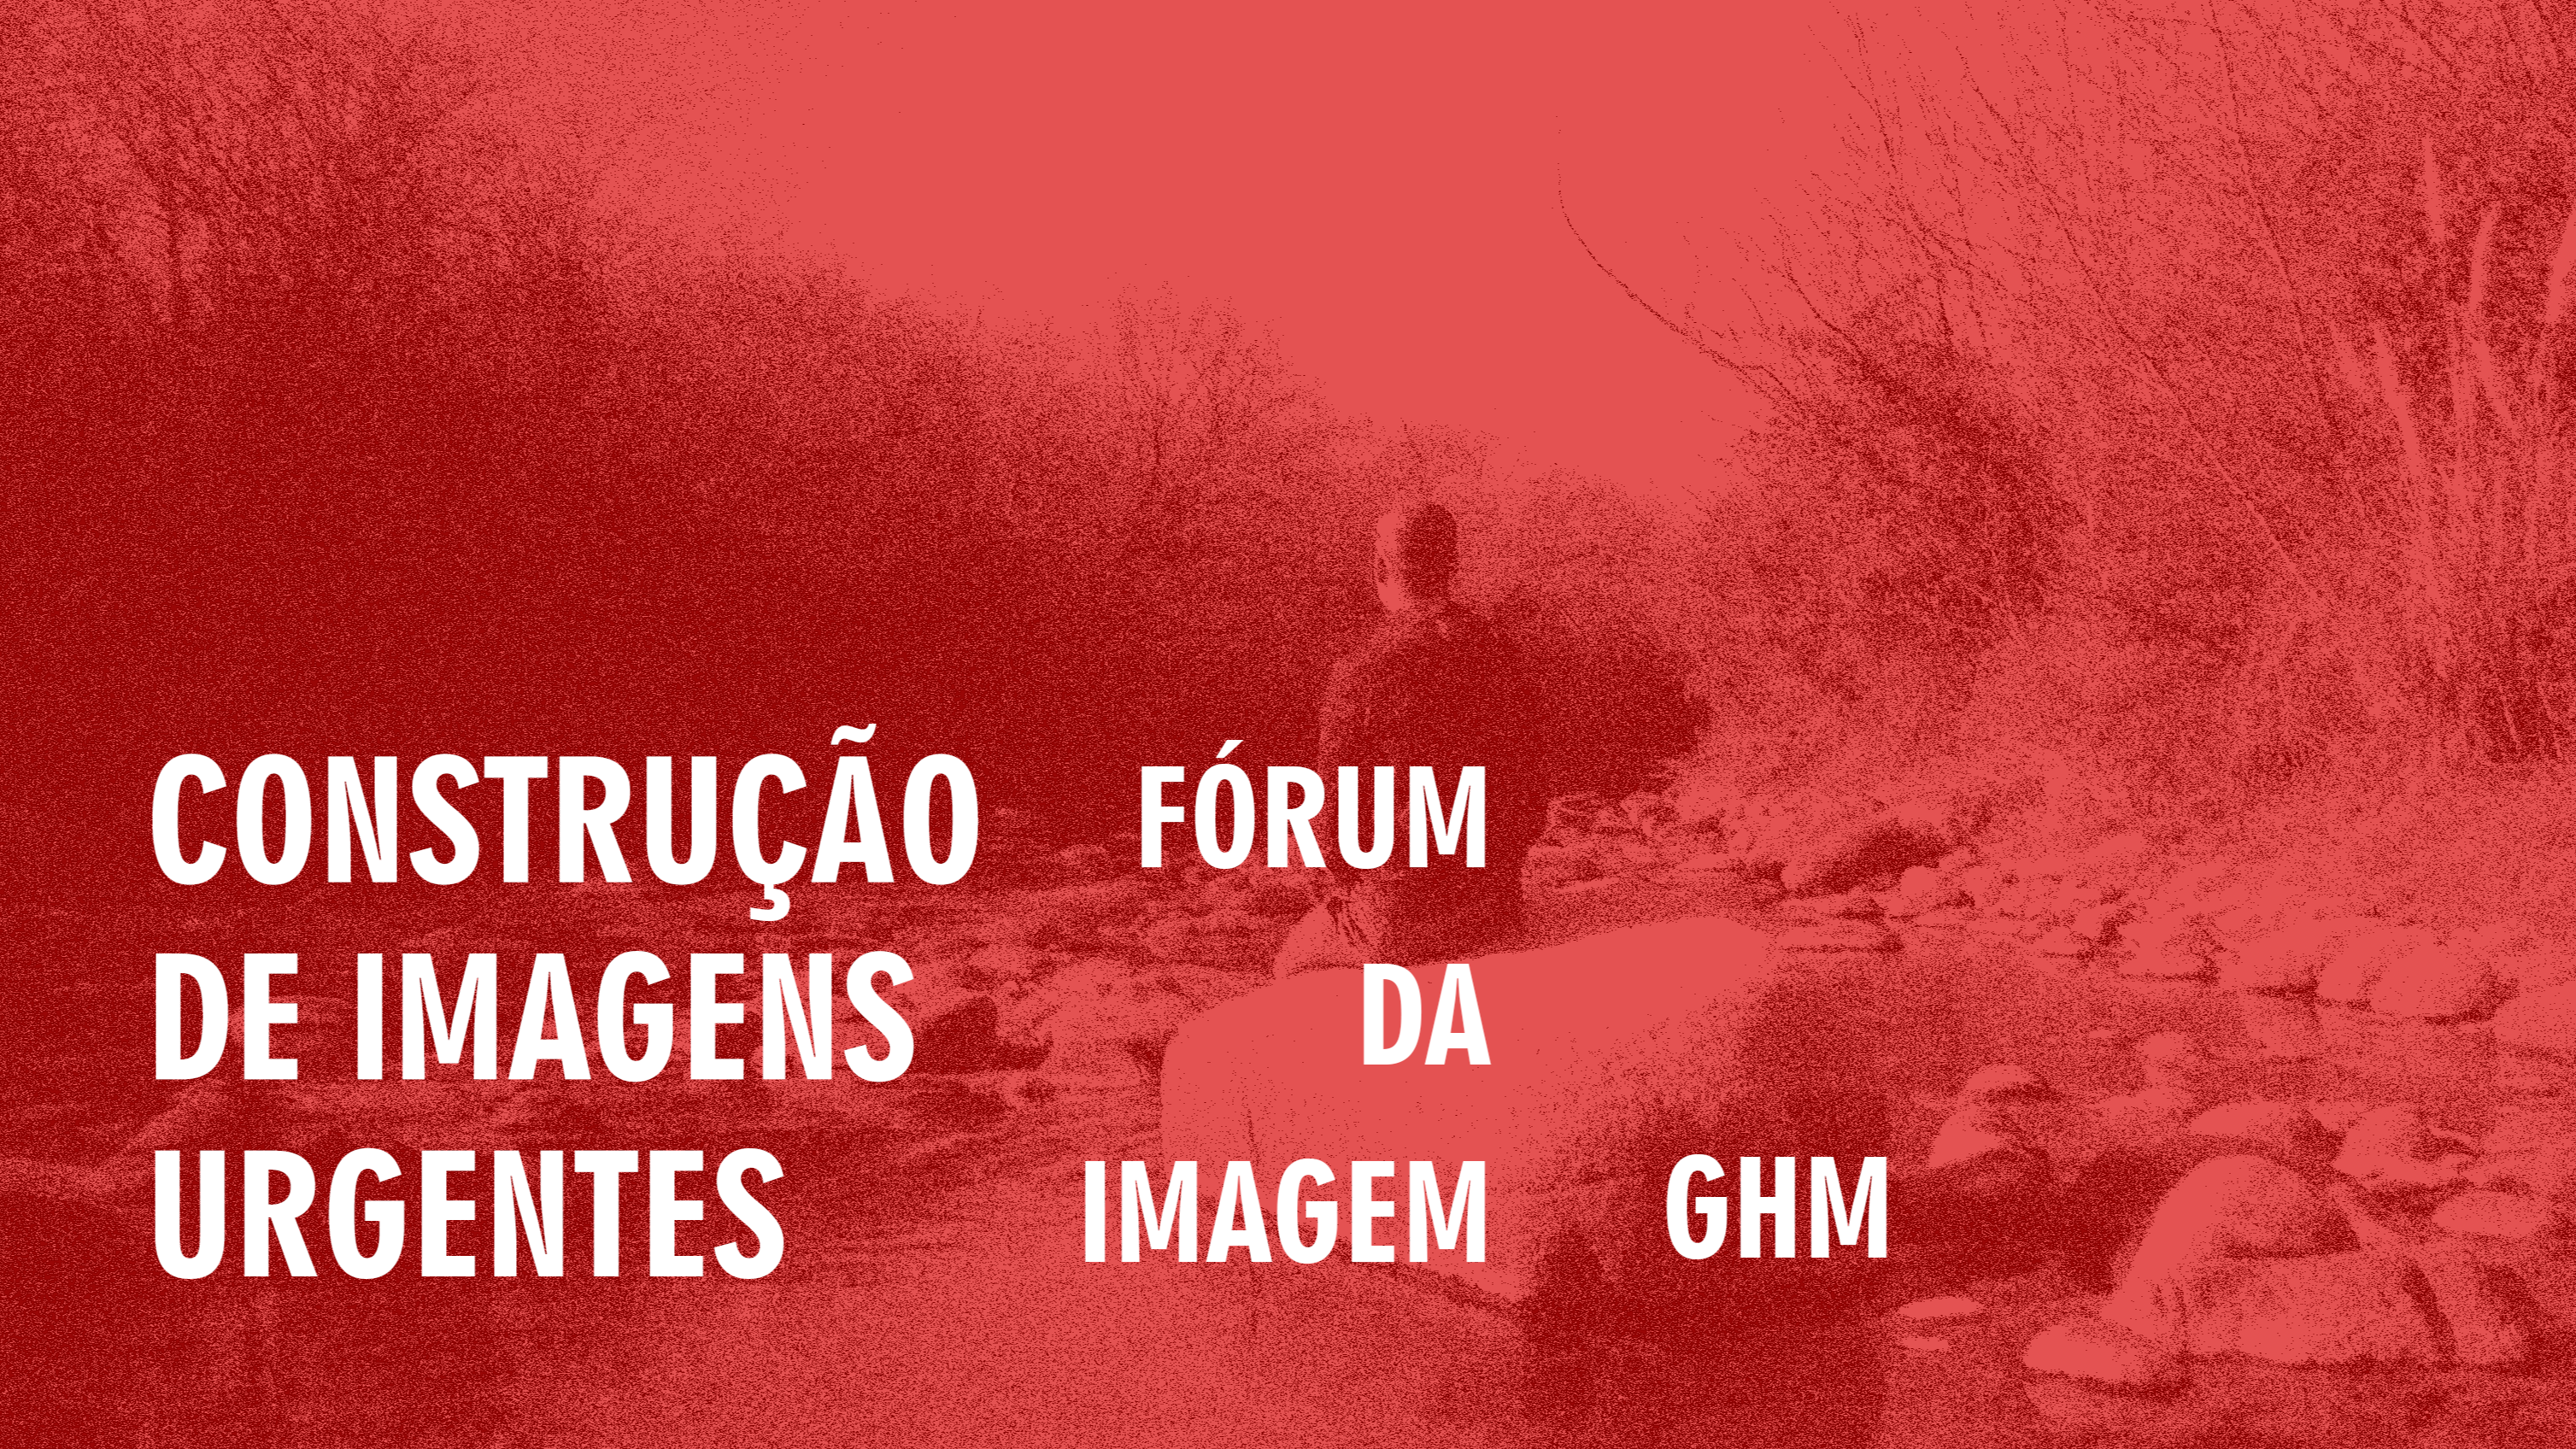 Cover image for timeline FÓRUM DA IMAGEM - CONSTRUÇÃO DE IMAGENS URGENTES